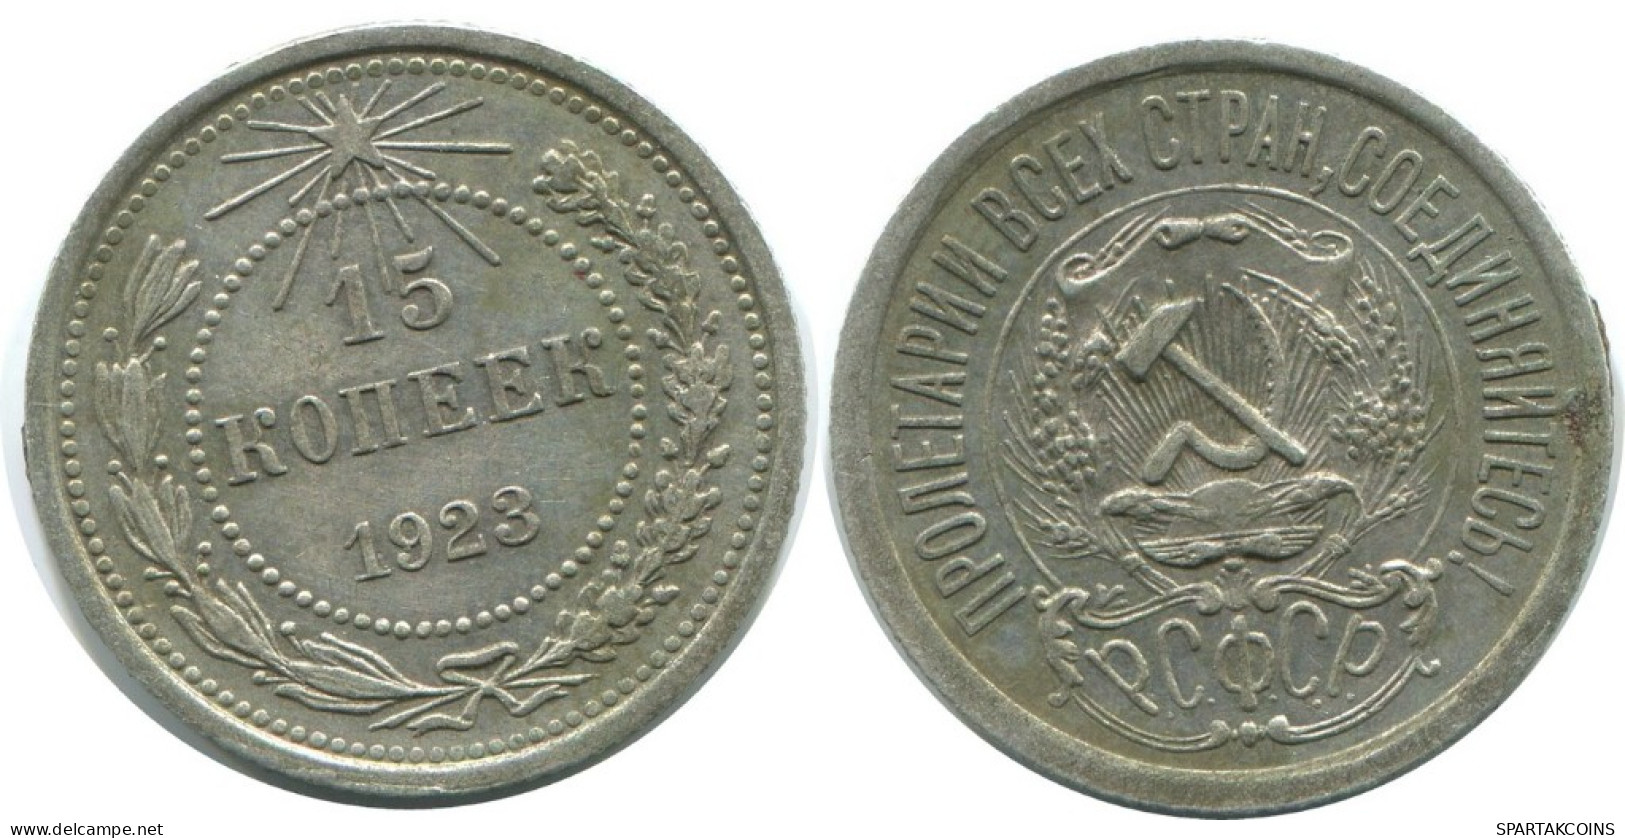 15 KOPEKS 1923 RUSSLAND RUSSIA RSFSR SILBER Münze HIGH GRADE #AF126.4.D.A - Russia